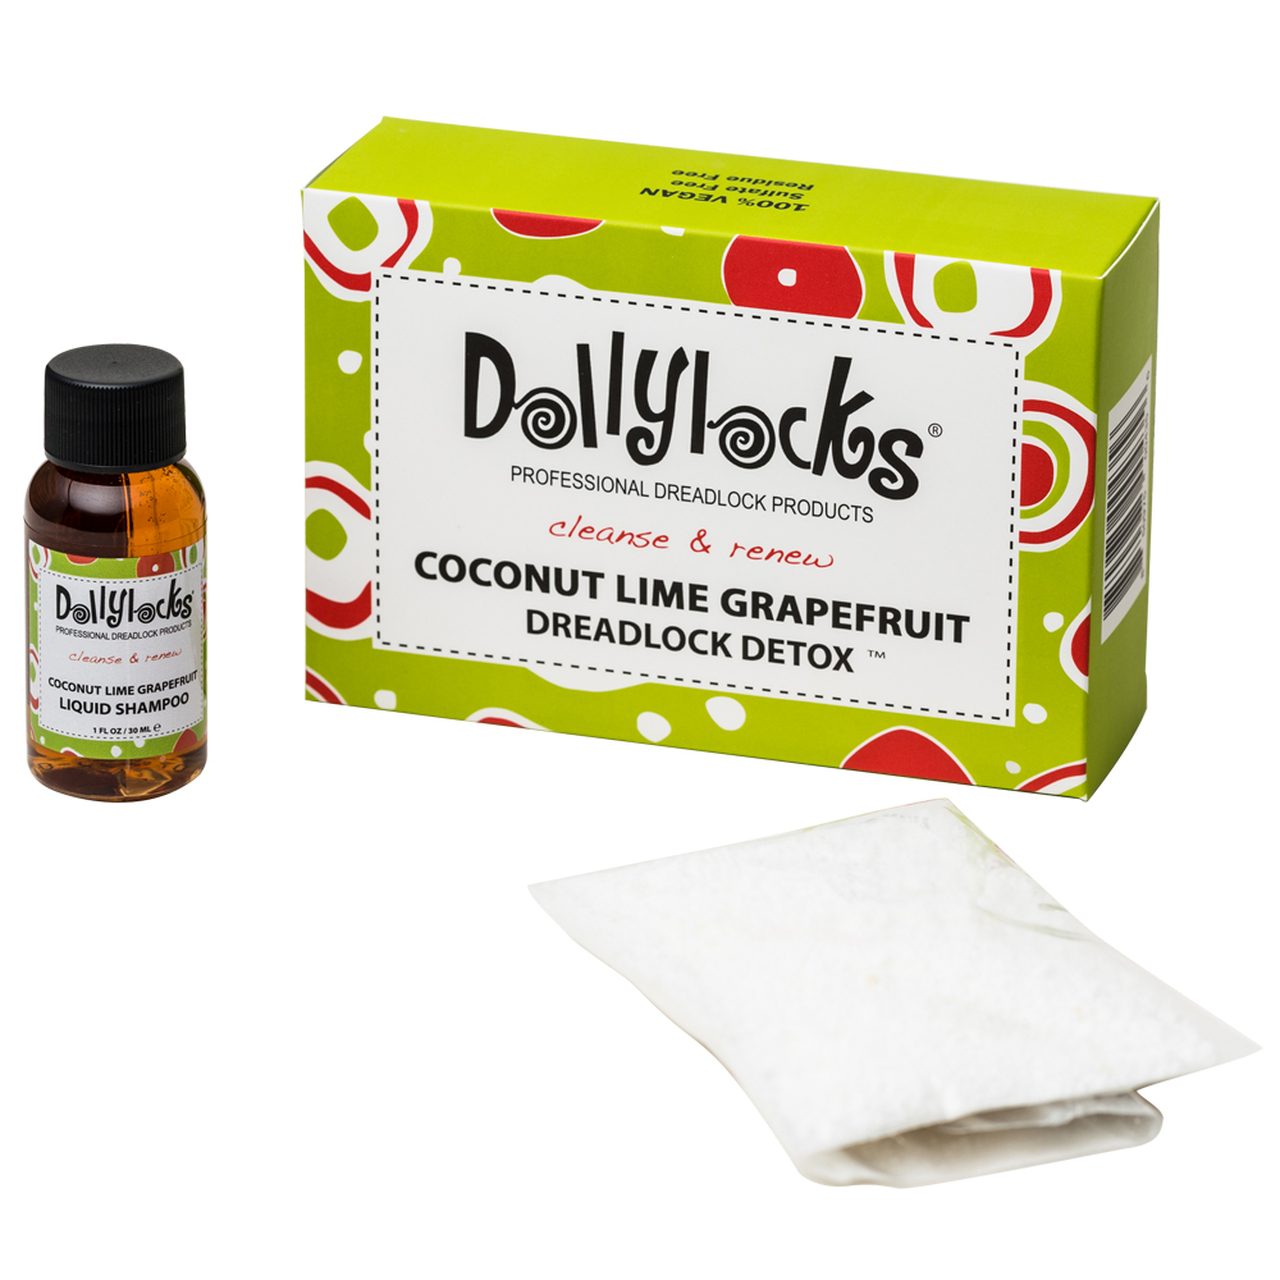 Dollylocks detox kit